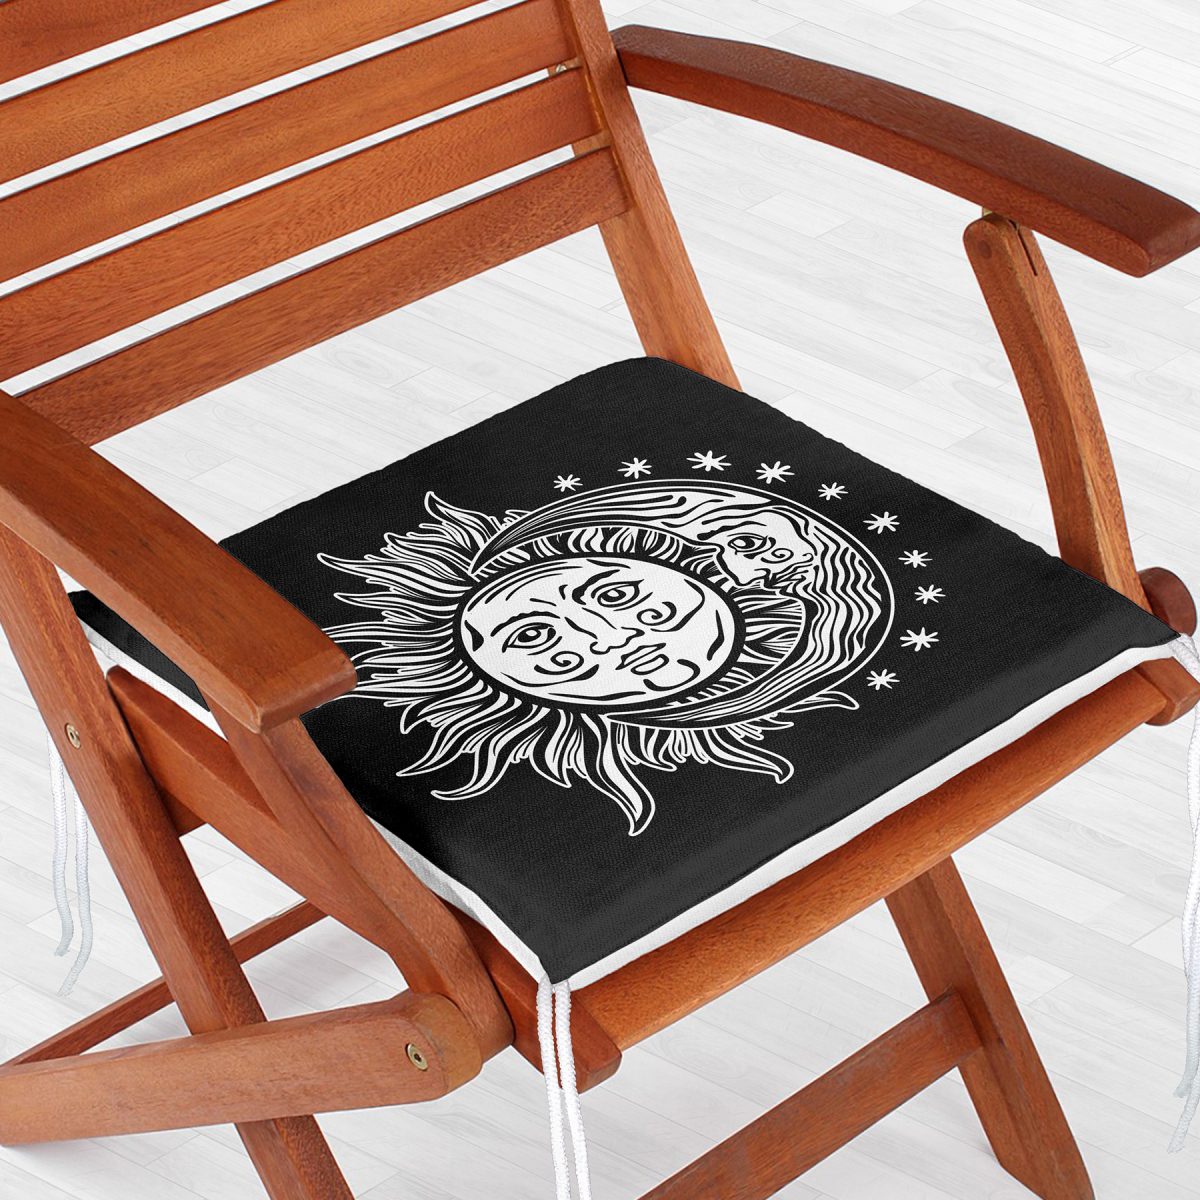 Güneş Ay Yıldızlı Dekoratif Fermuarlı Sandalye Minderi Realhomes